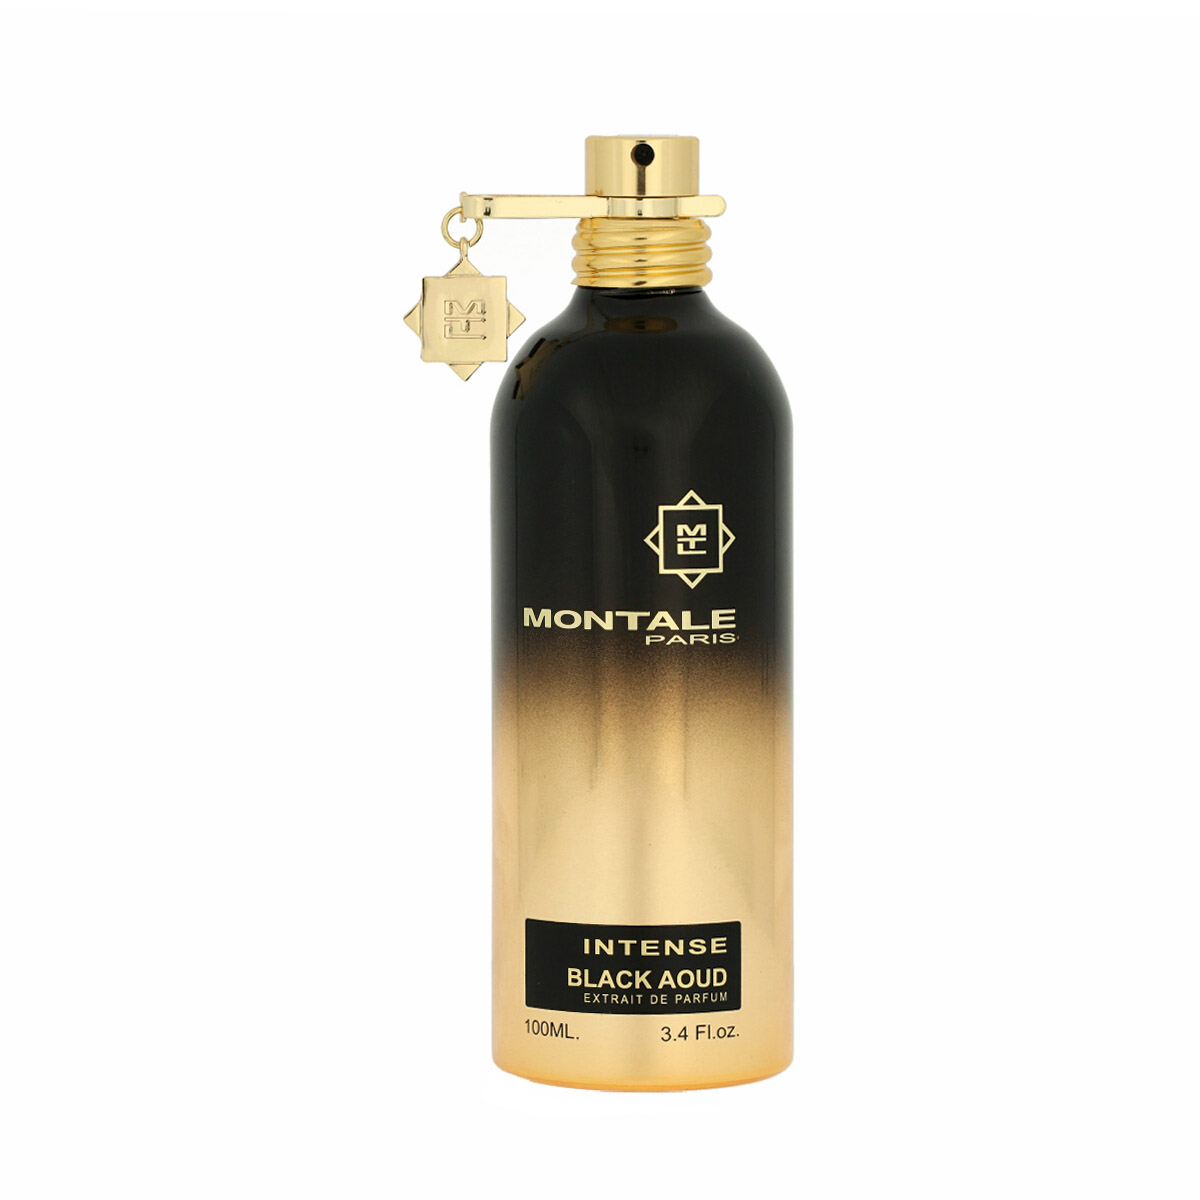 Montale Paris Intense Black Aoud Extrait De Parfum 10 ml NIŠINIAI kvepalų mėginukas (atomaizeris) Unisex Parfum